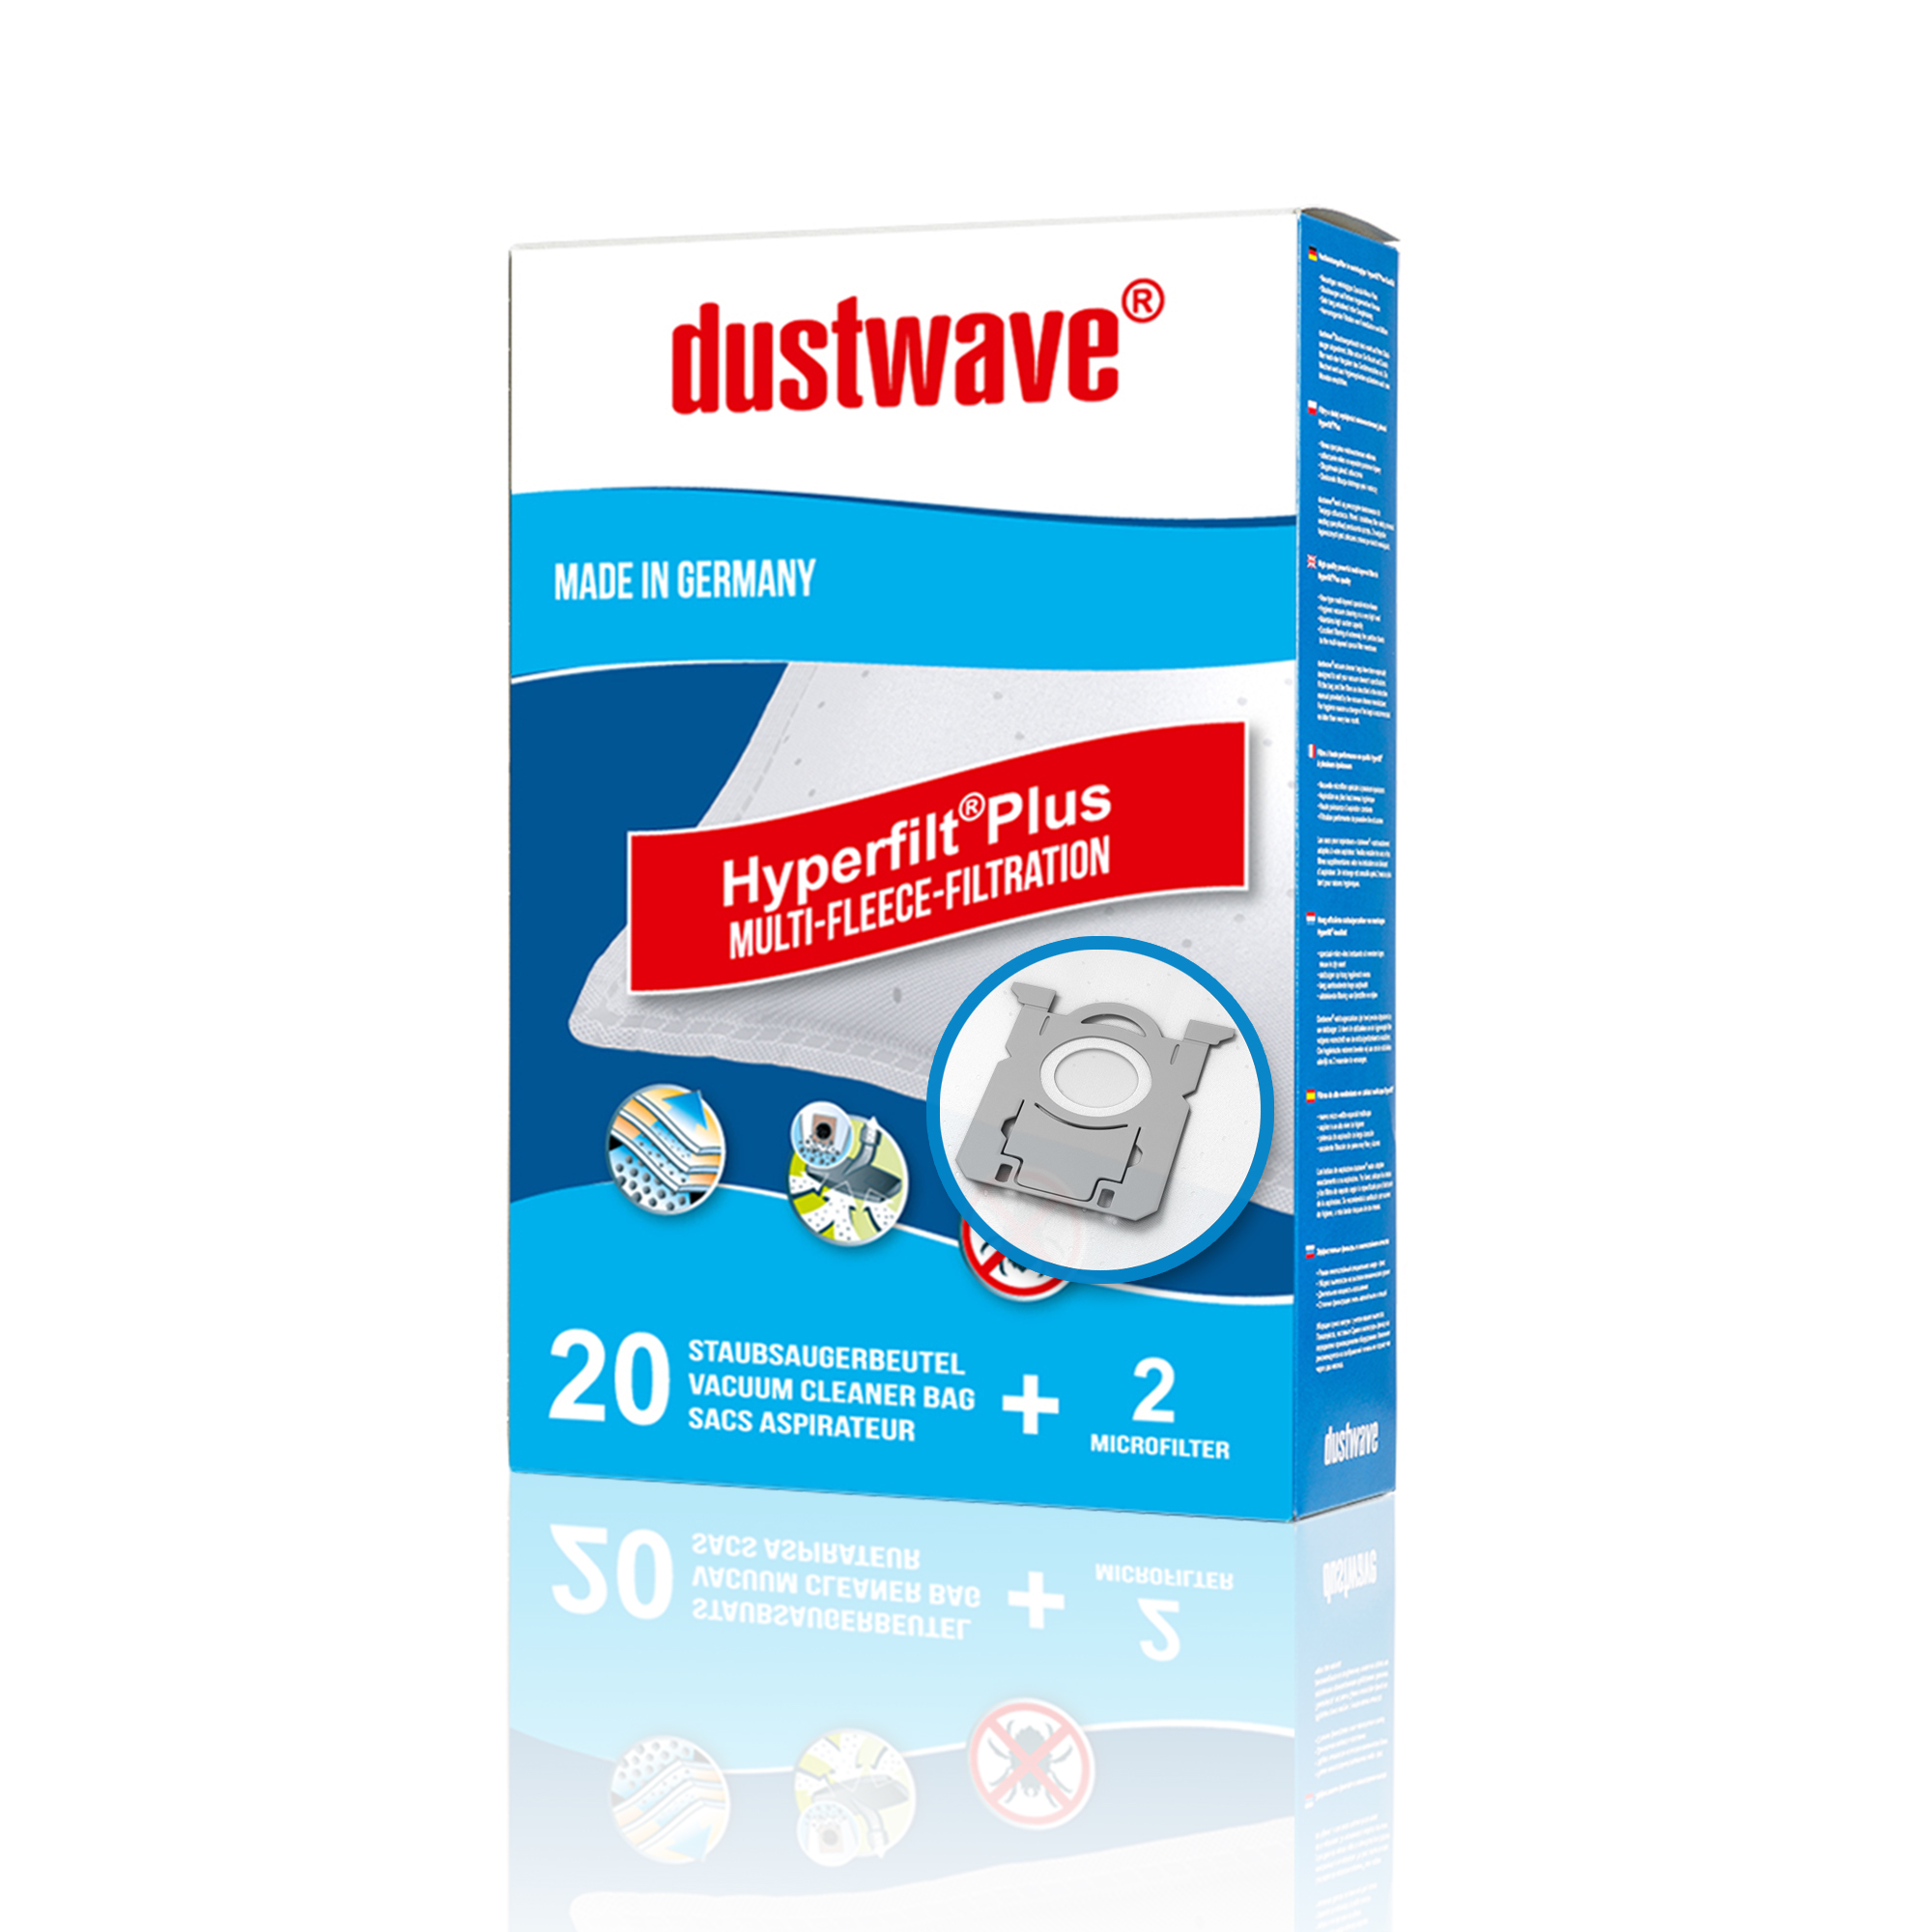 Dustwave® Premium 20 Staubsaugerbeutel für AEG APF6120 / Powerforce 77 - hocheffizient mit Hygieneverschluss - Made in Germany